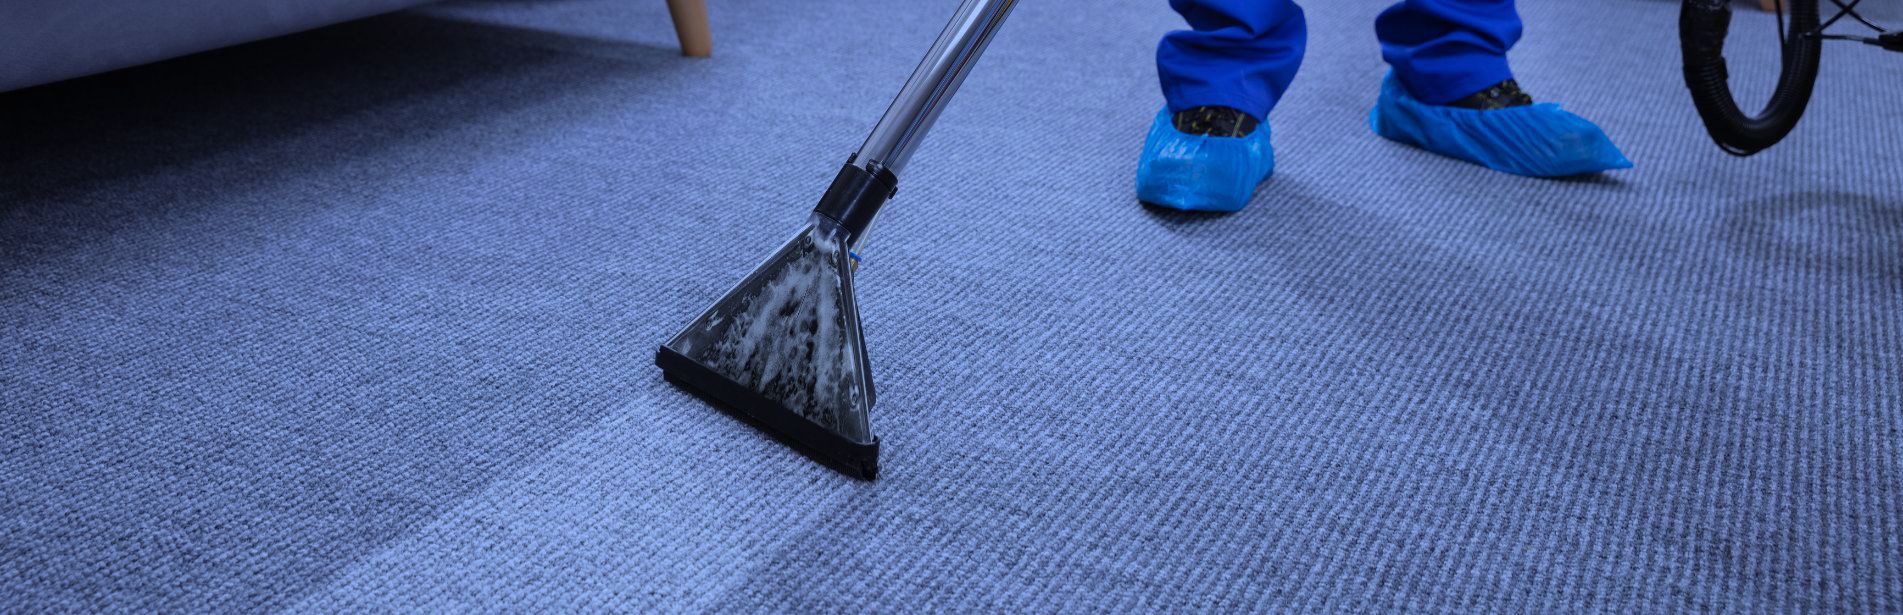 Consejos para la limpieza de tus alfombras